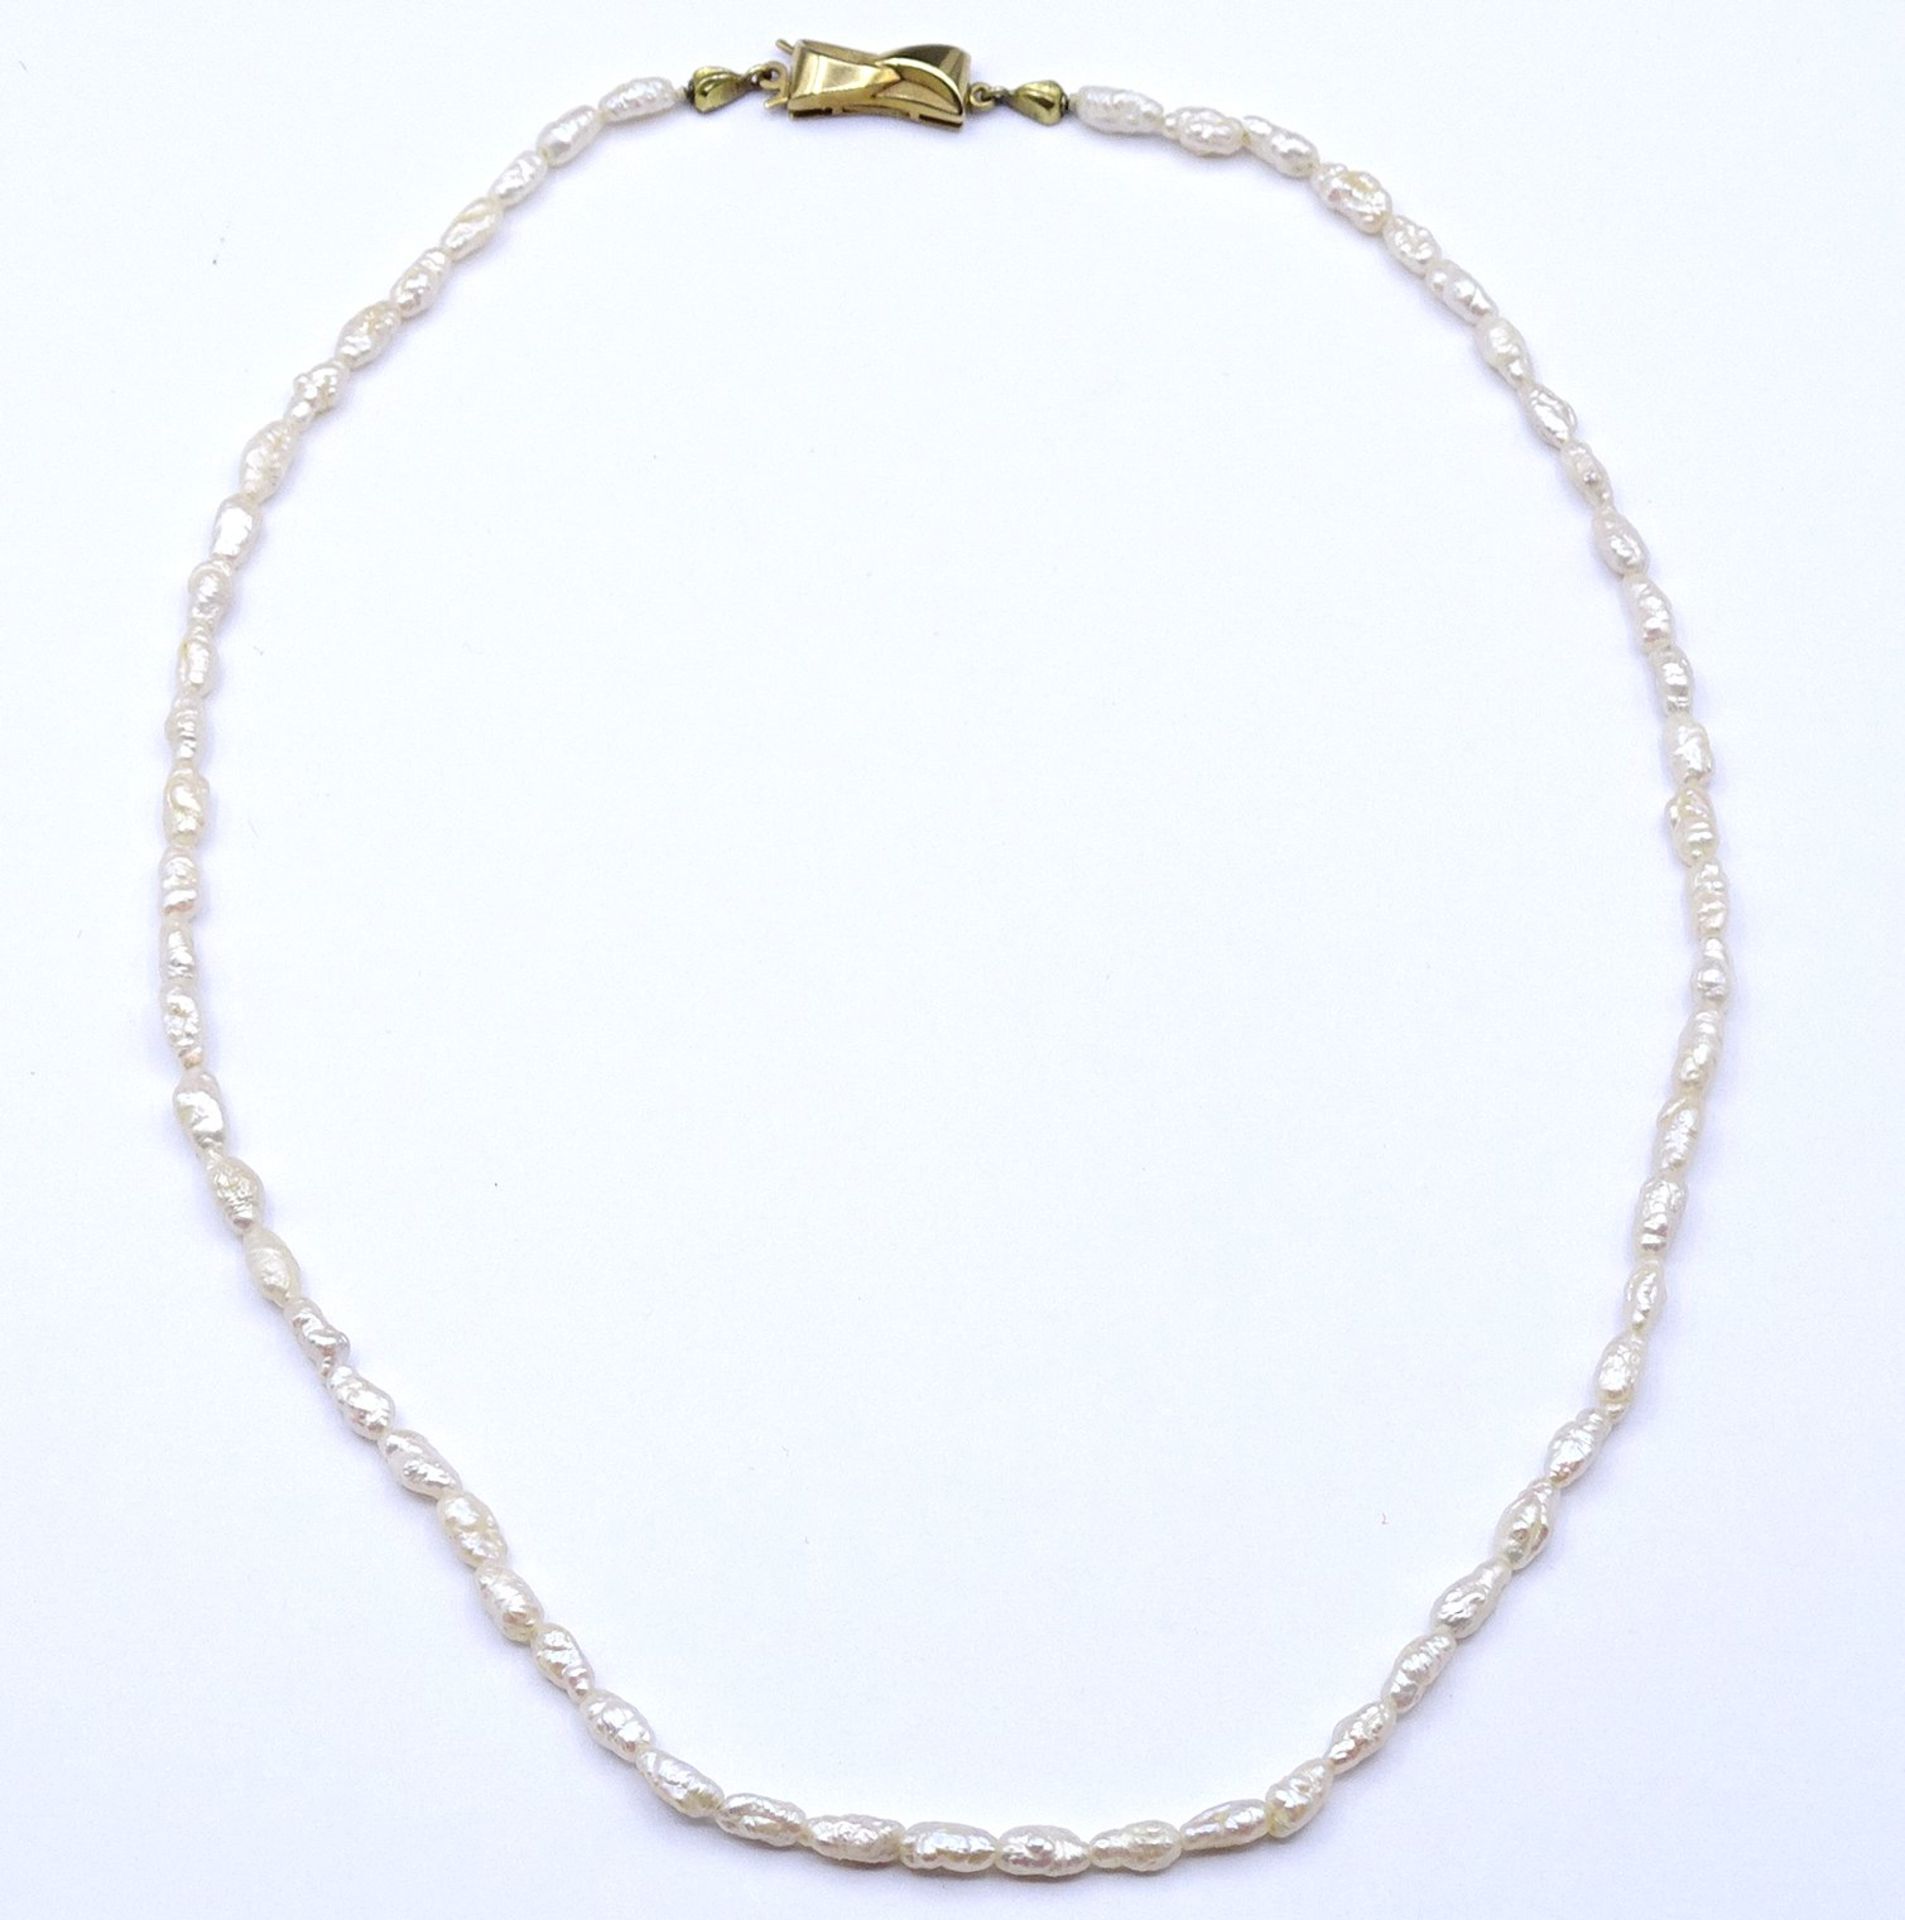 SW - Perlen Halskette mit Goldverschluss 375/000, L. 41cm - Image 4 of 6